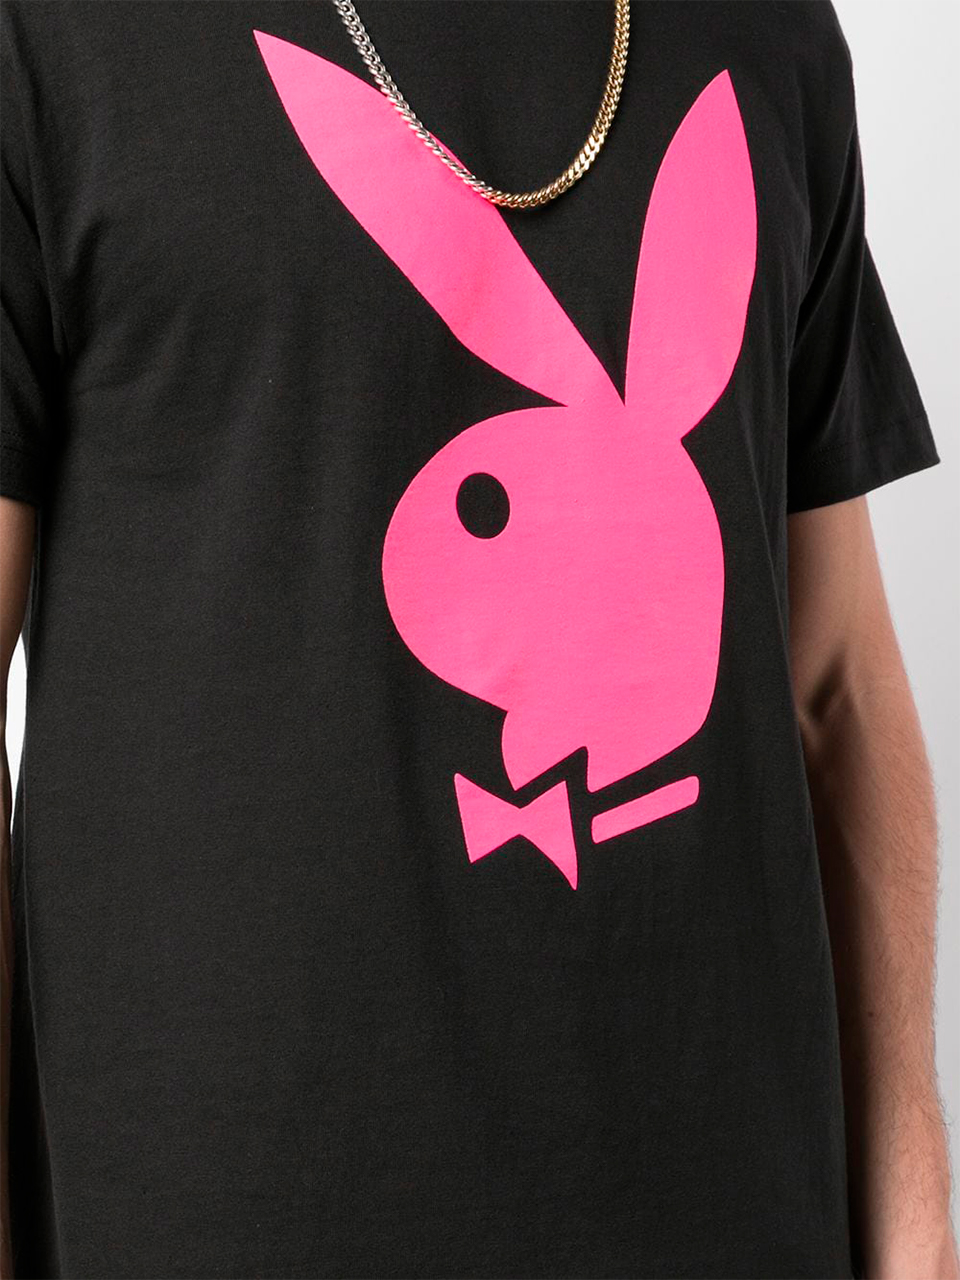 Imagem de: Camiseta Anti Social Social Club Preta com Estampa Playboy Rosa